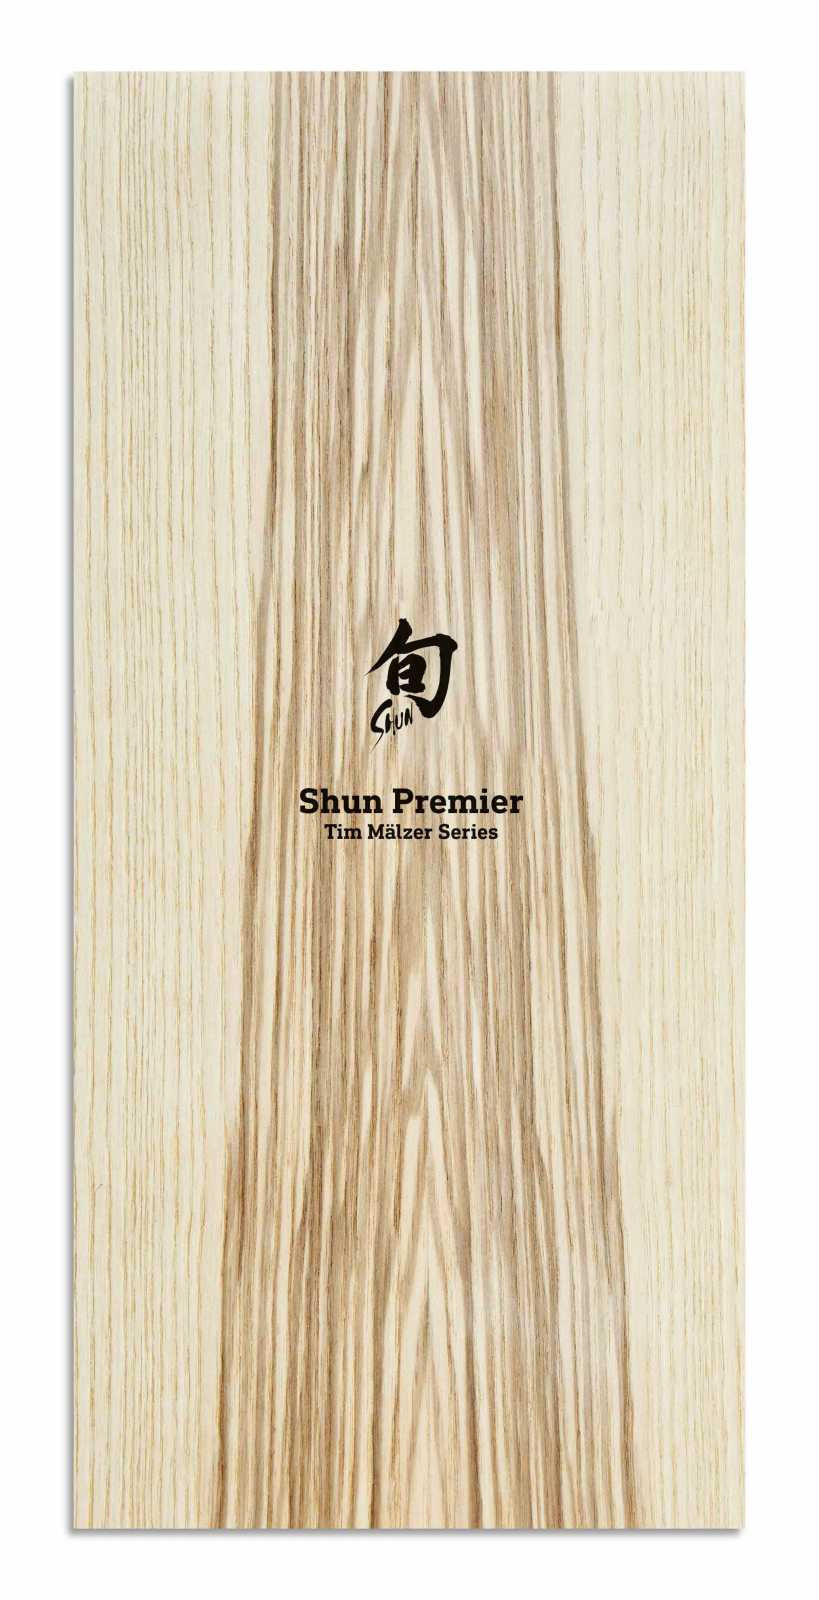 Набор ножей Kai Shun Premier Tim Malzer в деревянном футляре, 2 предмета (TDMS-220) - Фото nav 3